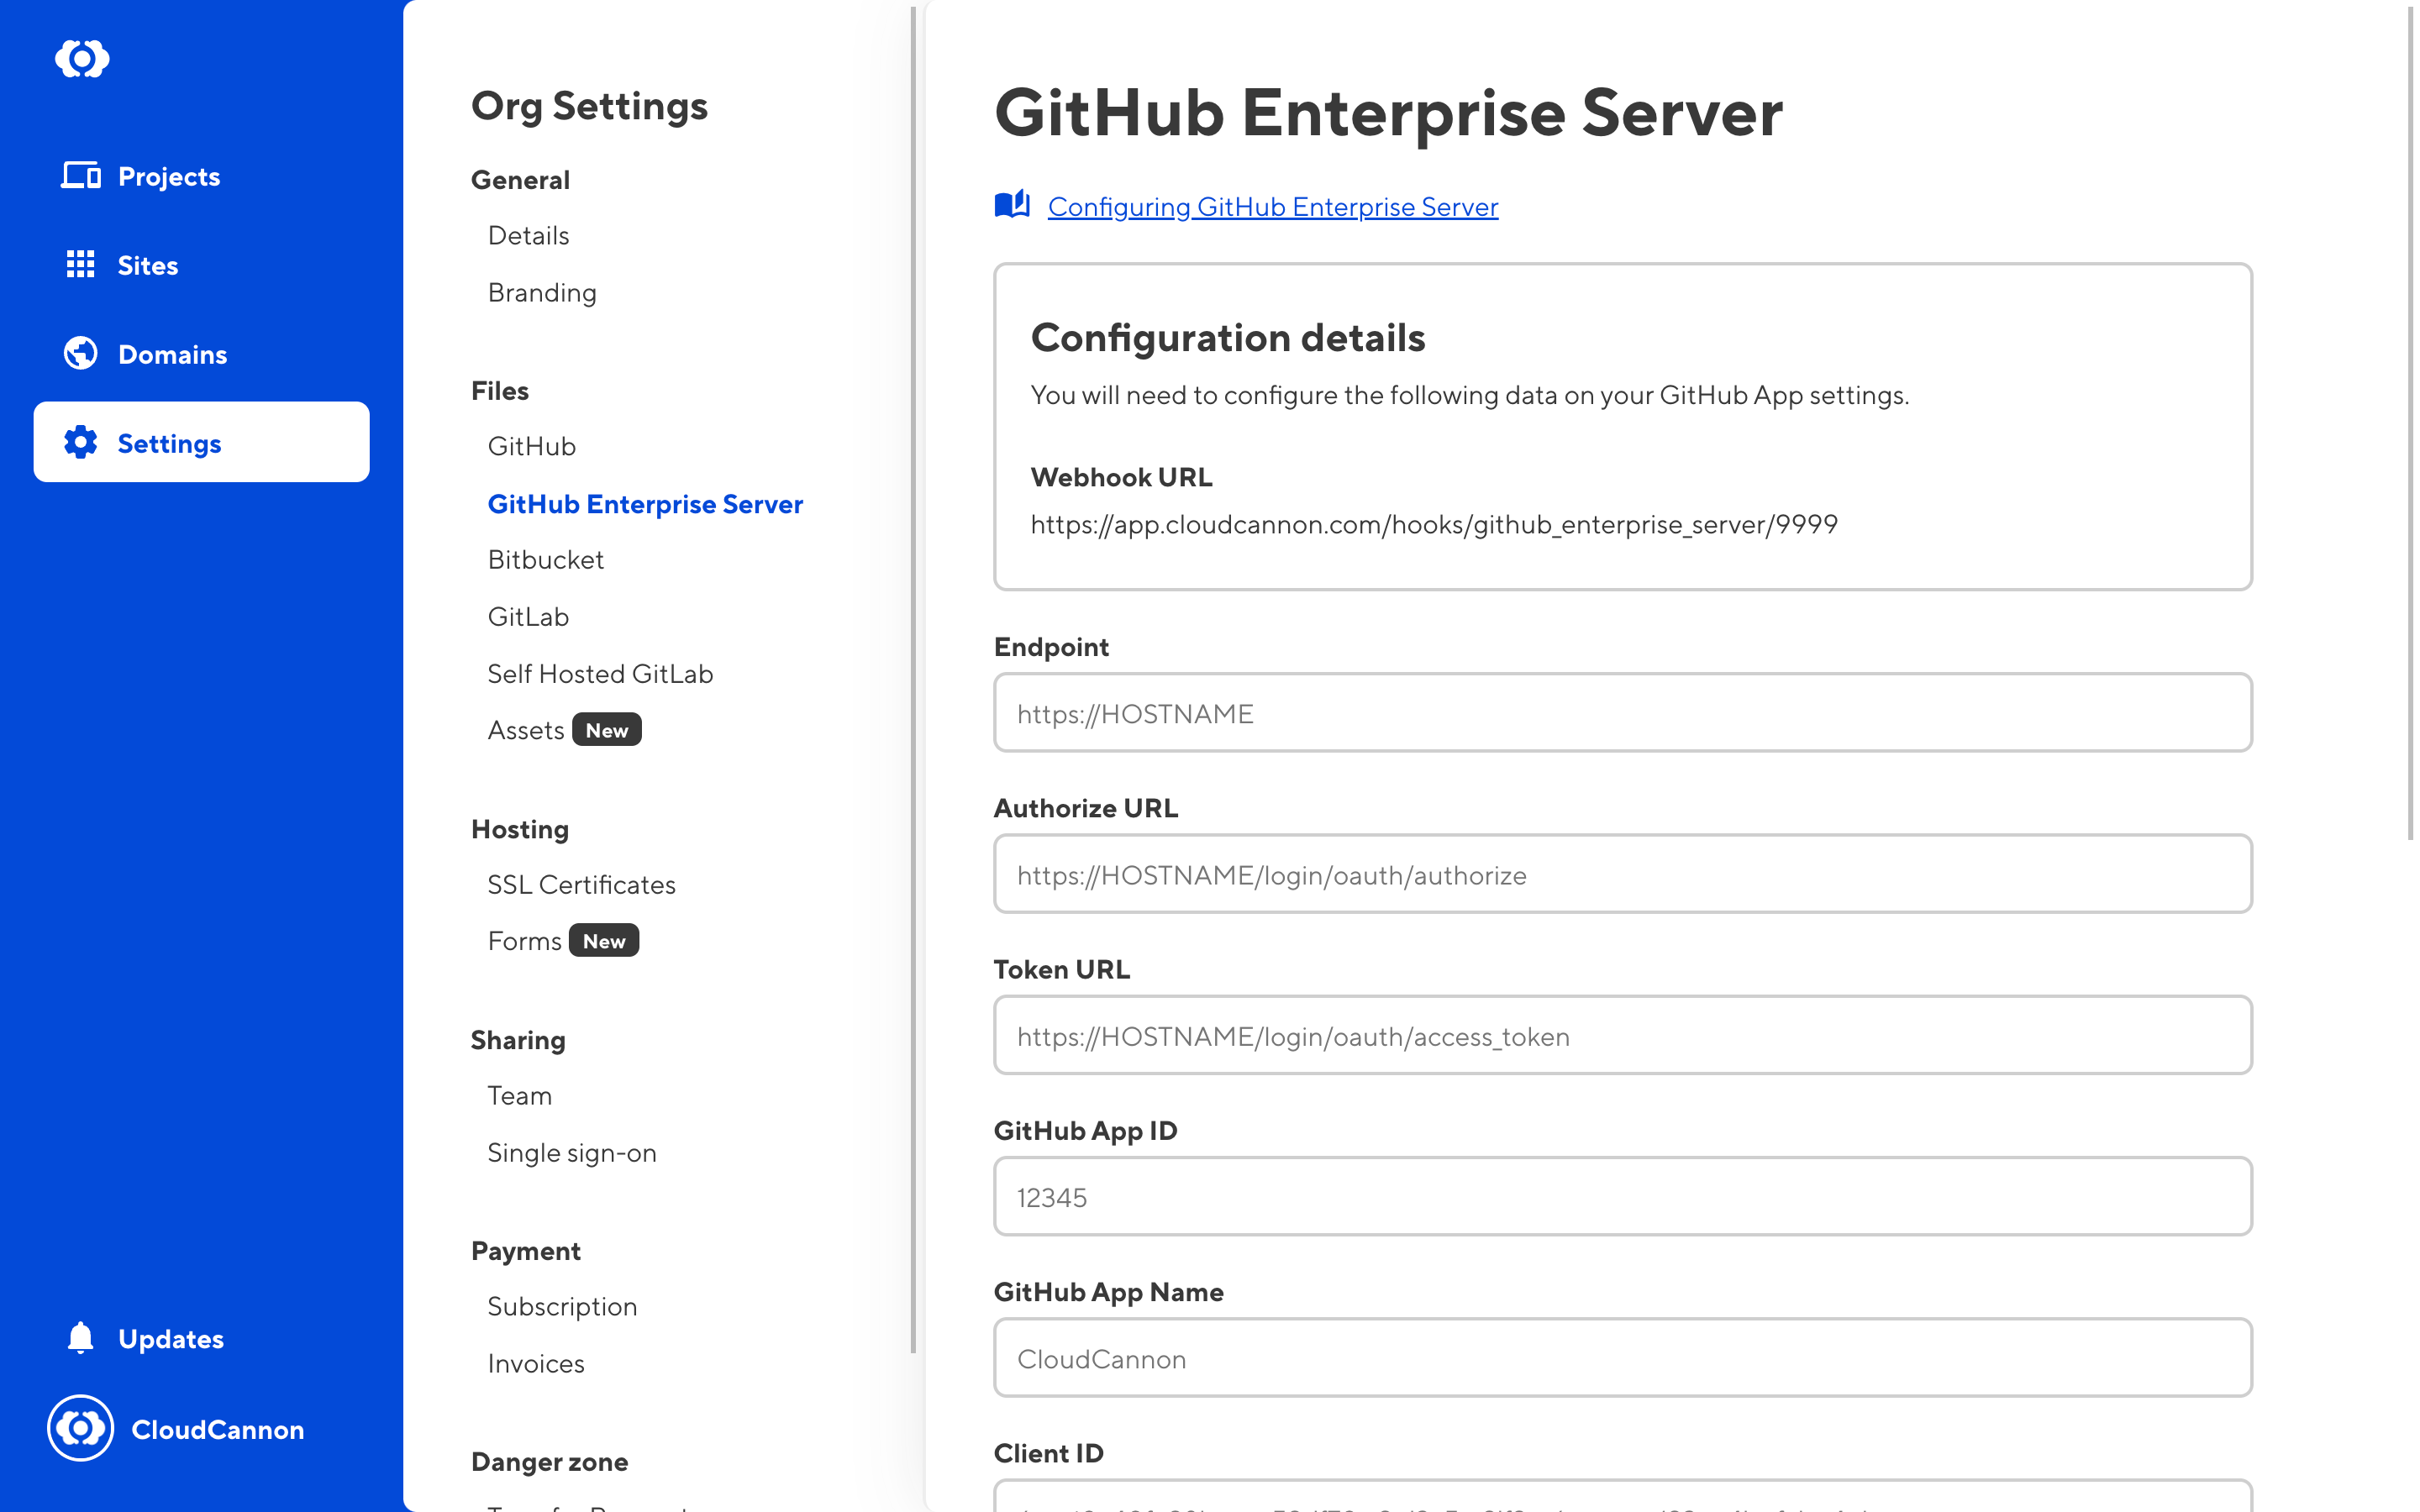 Configuring your GitHub Enterprise Server